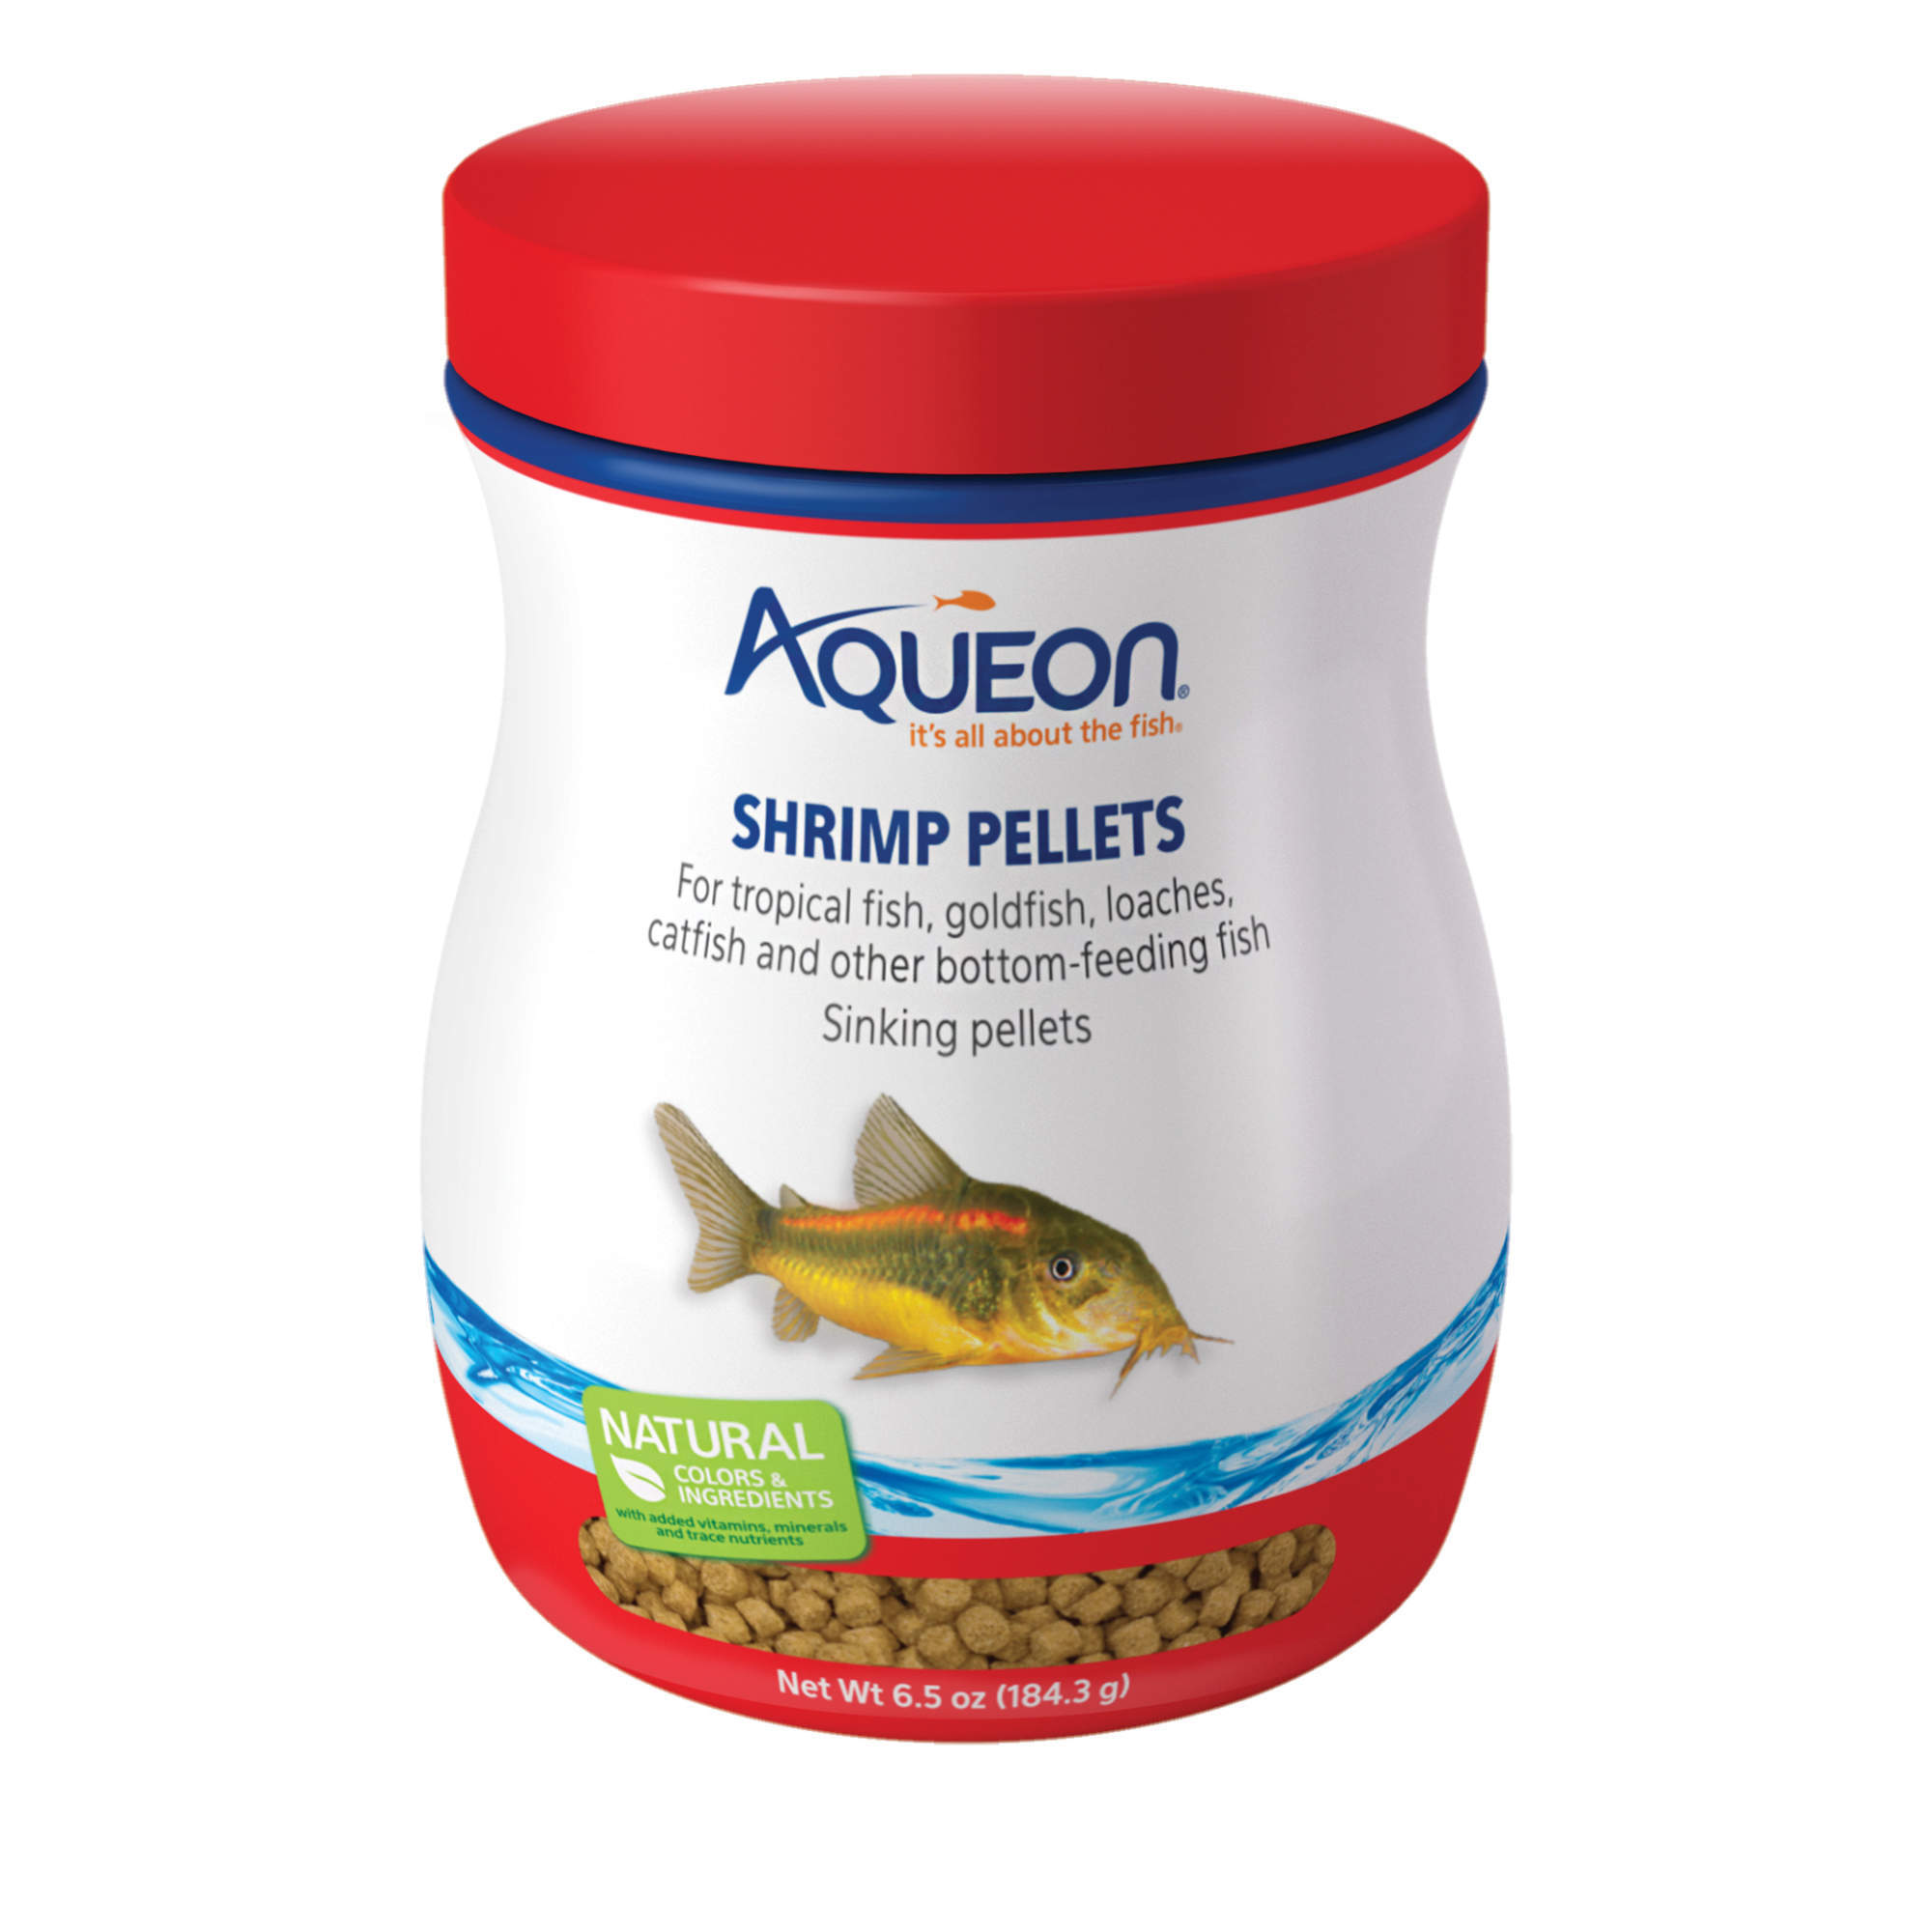 Aqueon Shrimp Pellets Fish Food, 6.5 oz 